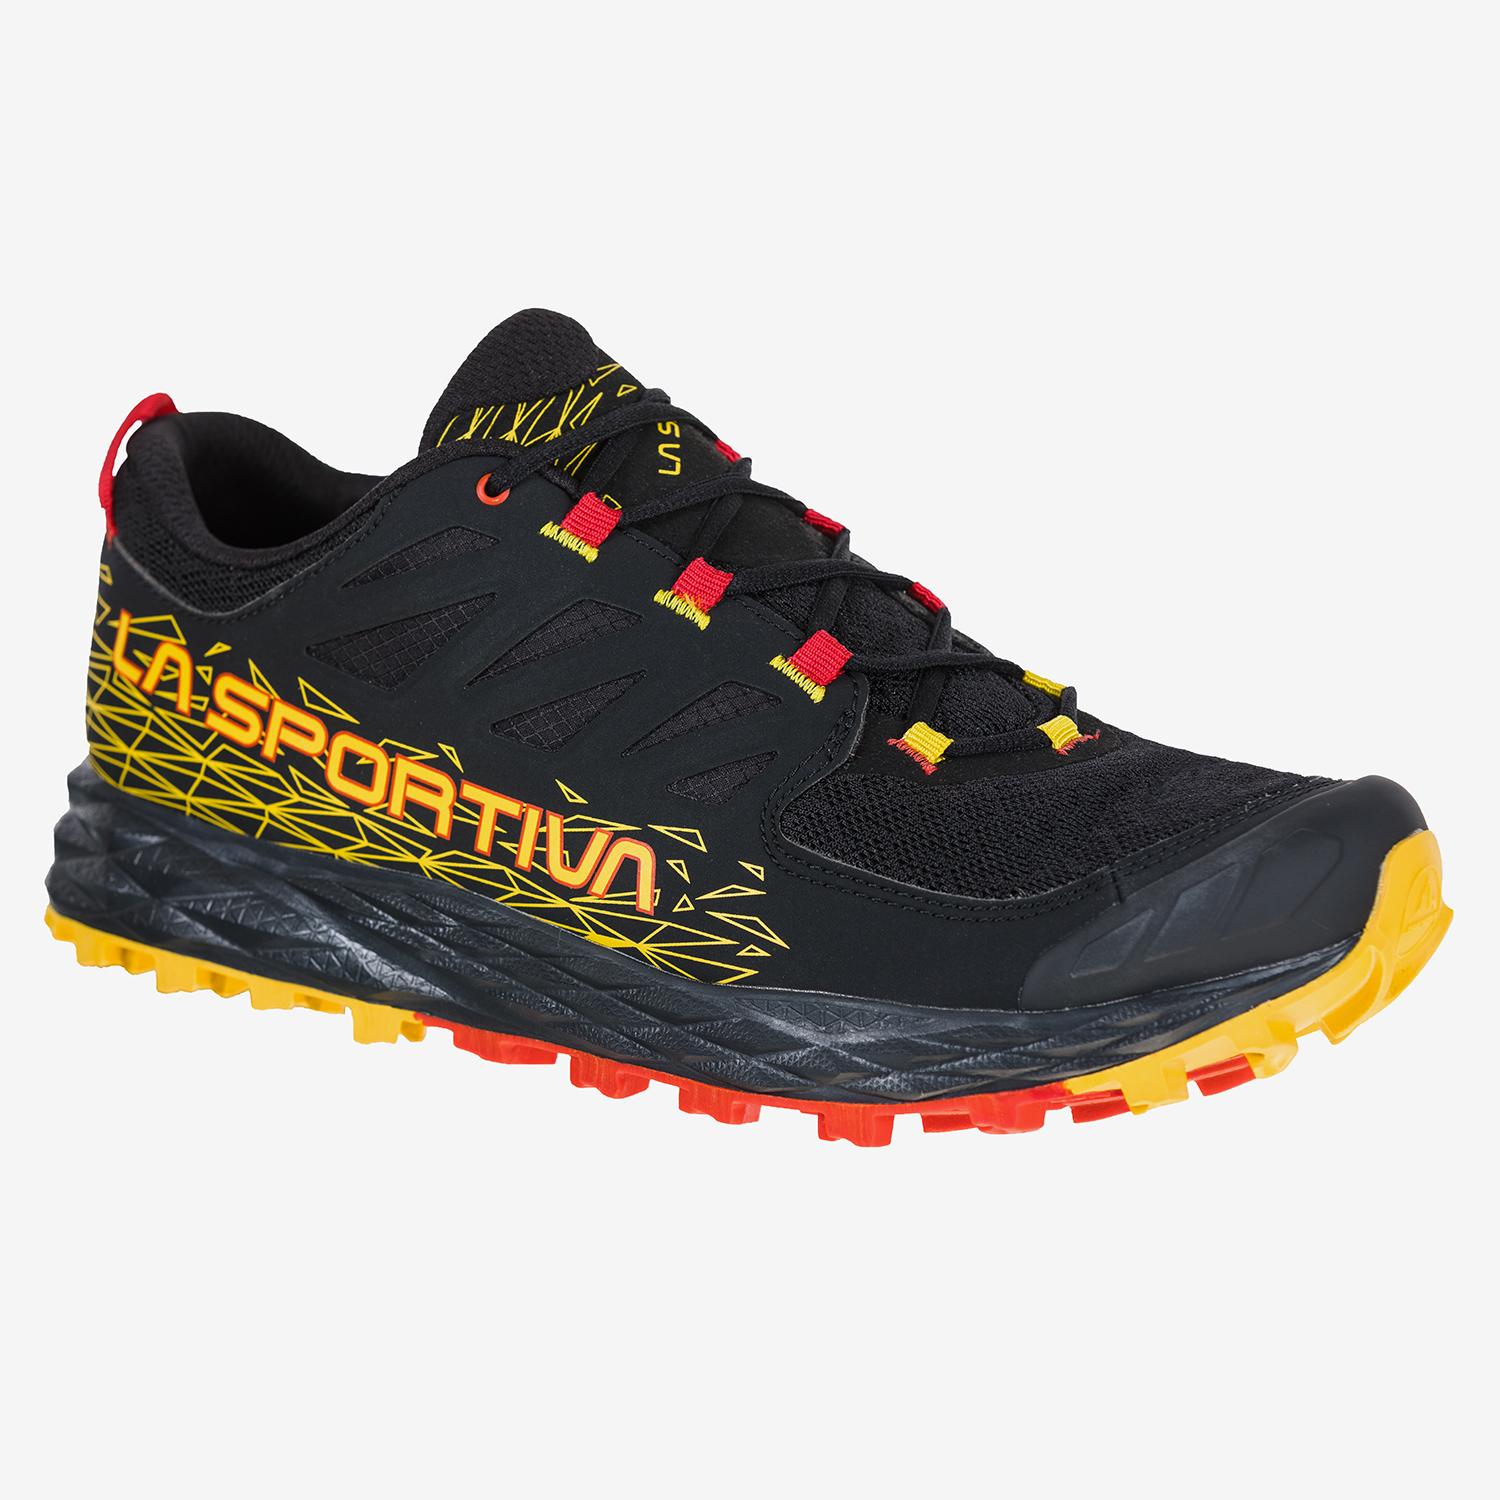 La Sportiva Trail Running Socks - Calcetines de running, Comprar online